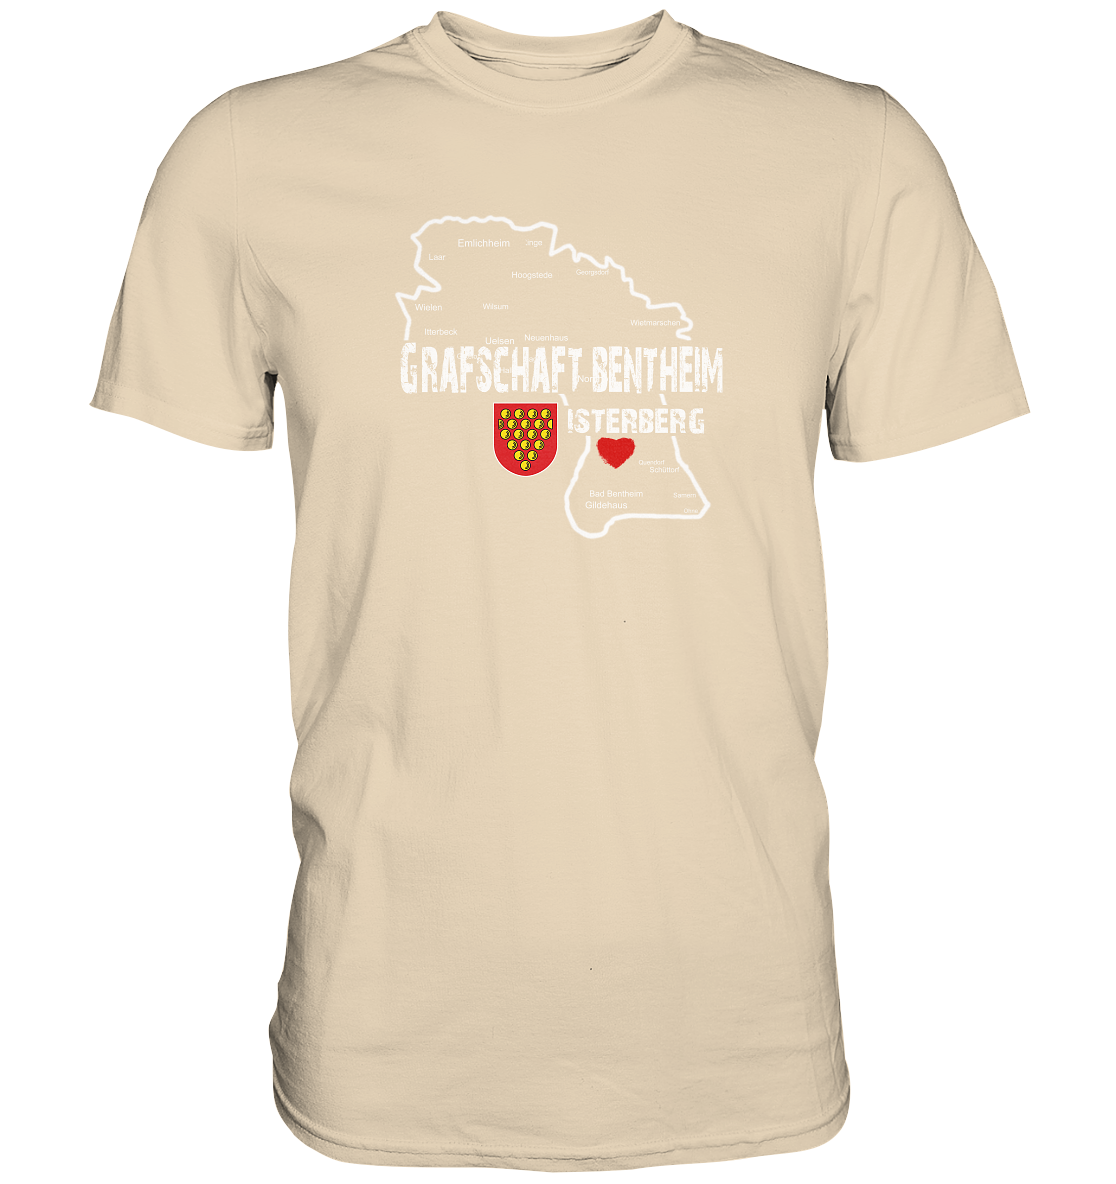 Hometown Shirt "Isterberg" - Premium Shirt